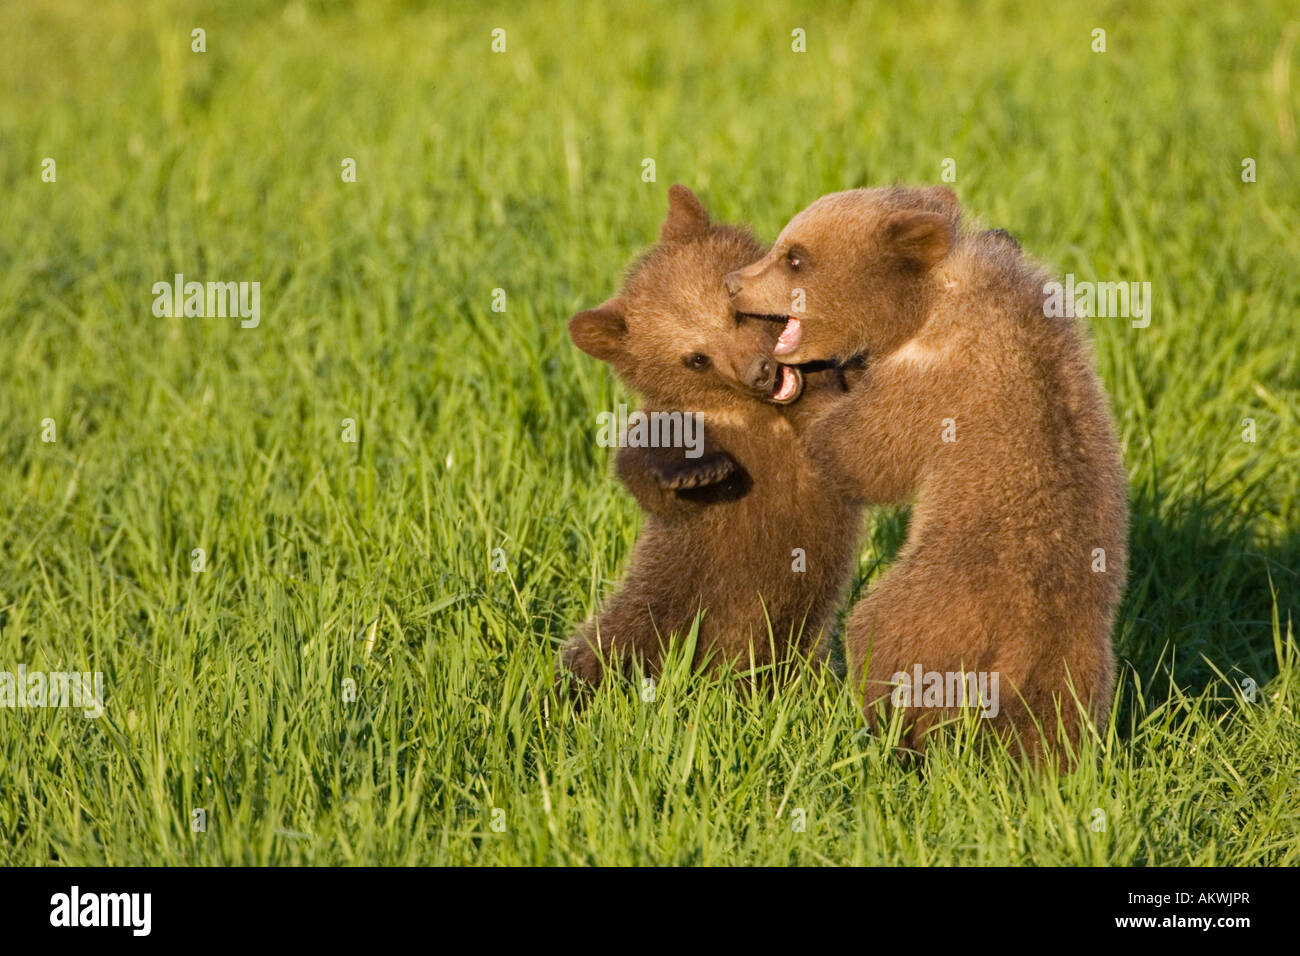 European Brown Bear Cubs Playing ((Ursus arctos), close-up Stock Photo